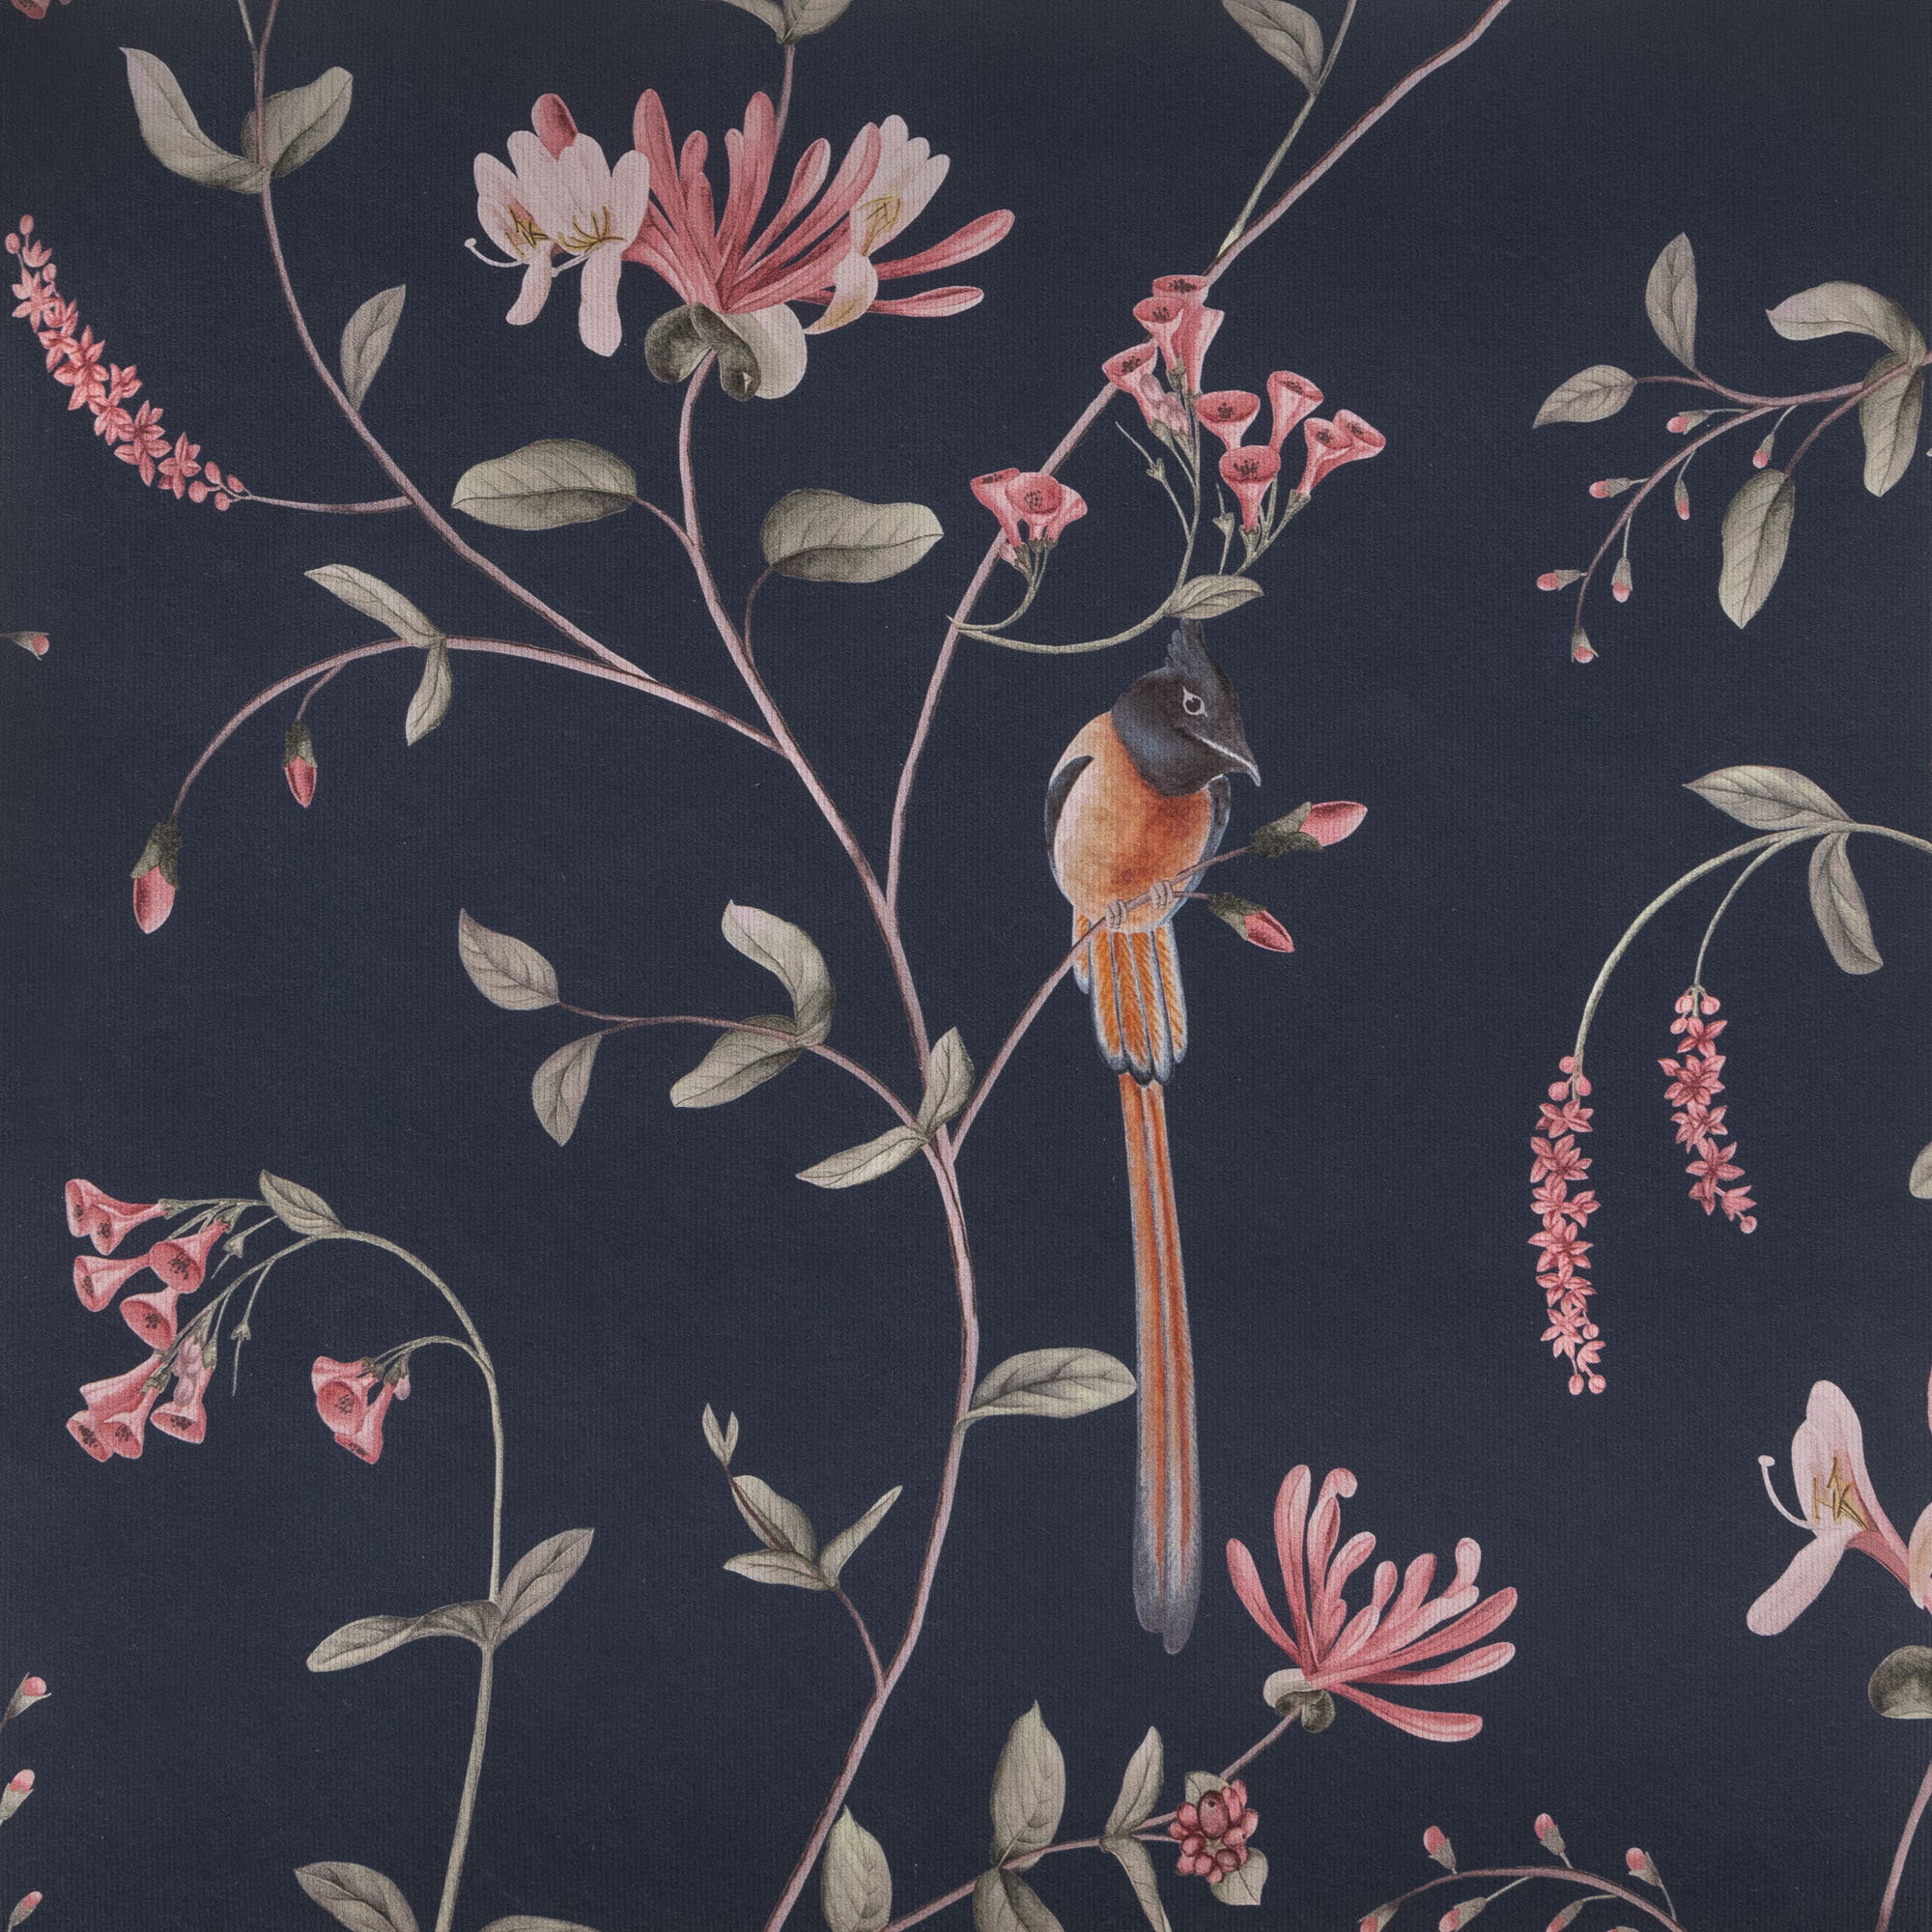 A Persian Garden Moonlit - Wallpaper